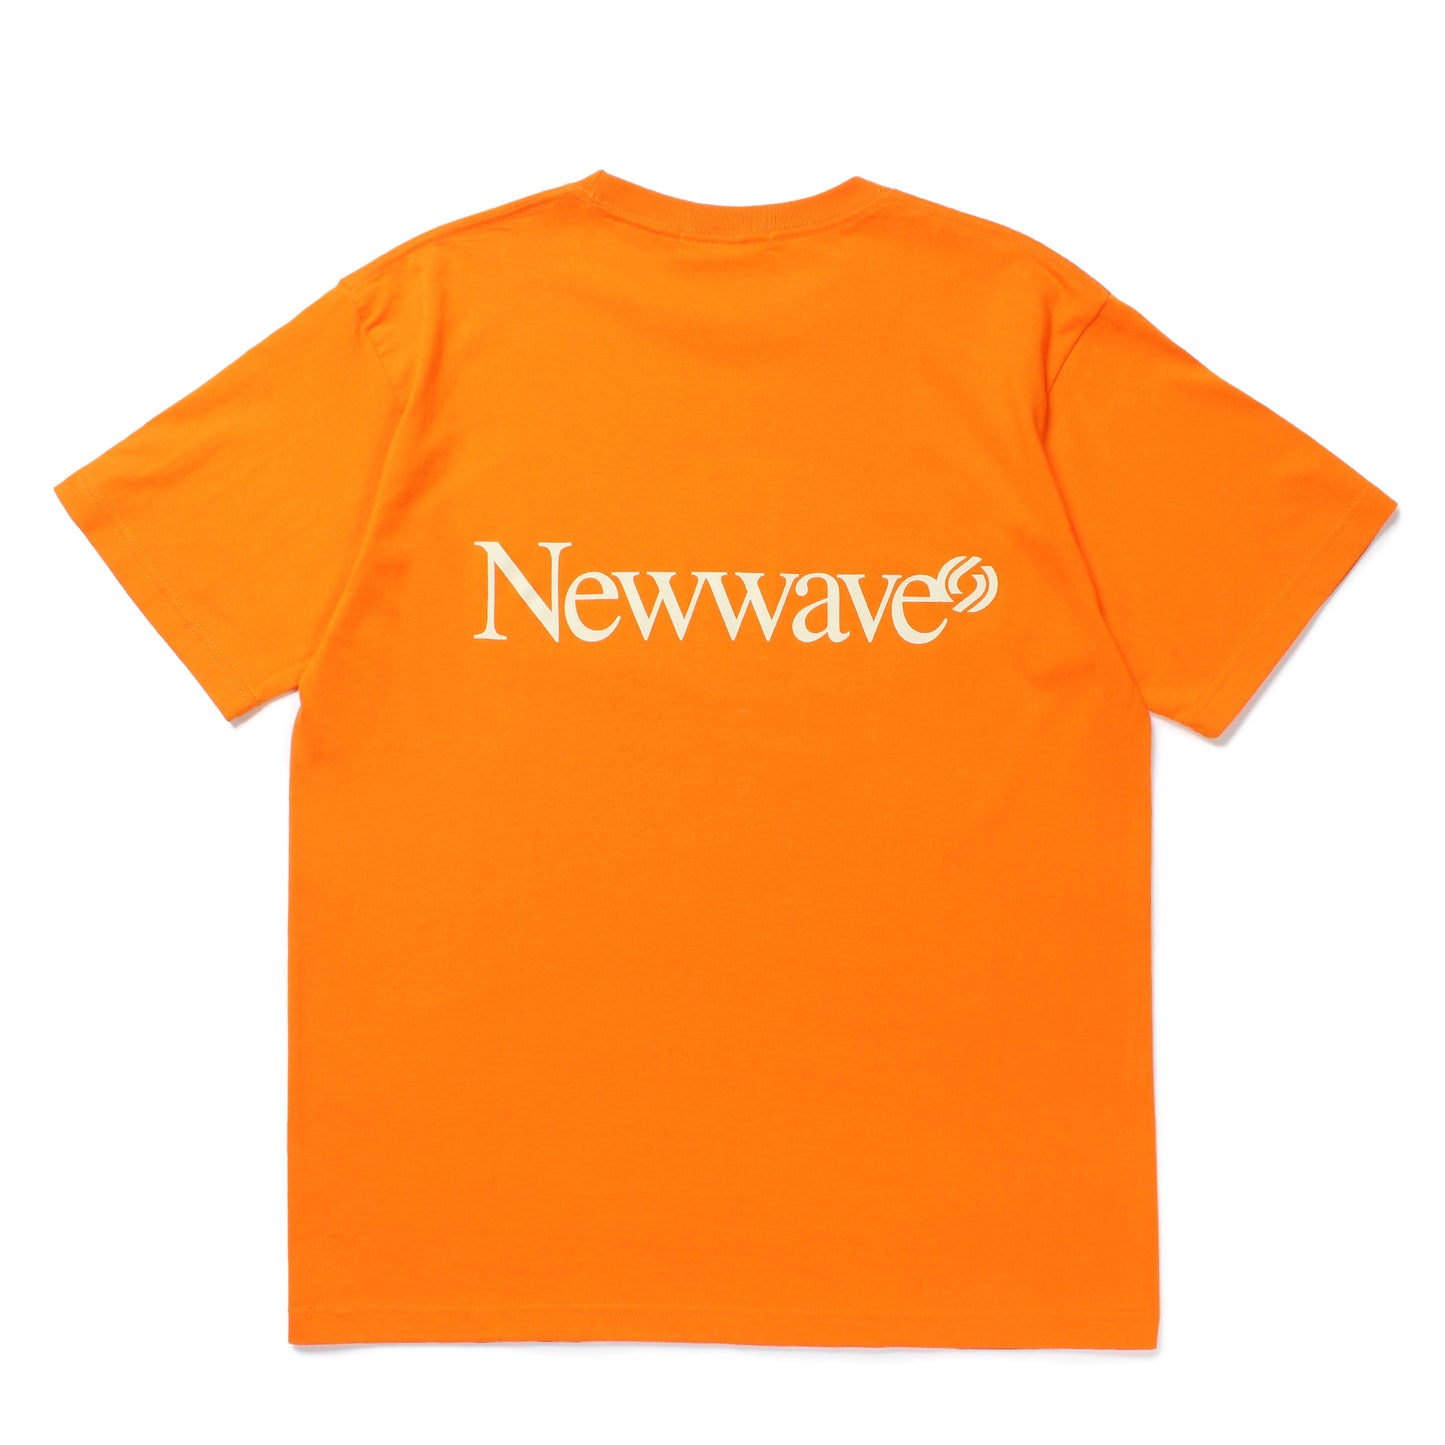 Newwave Tee (Orange)